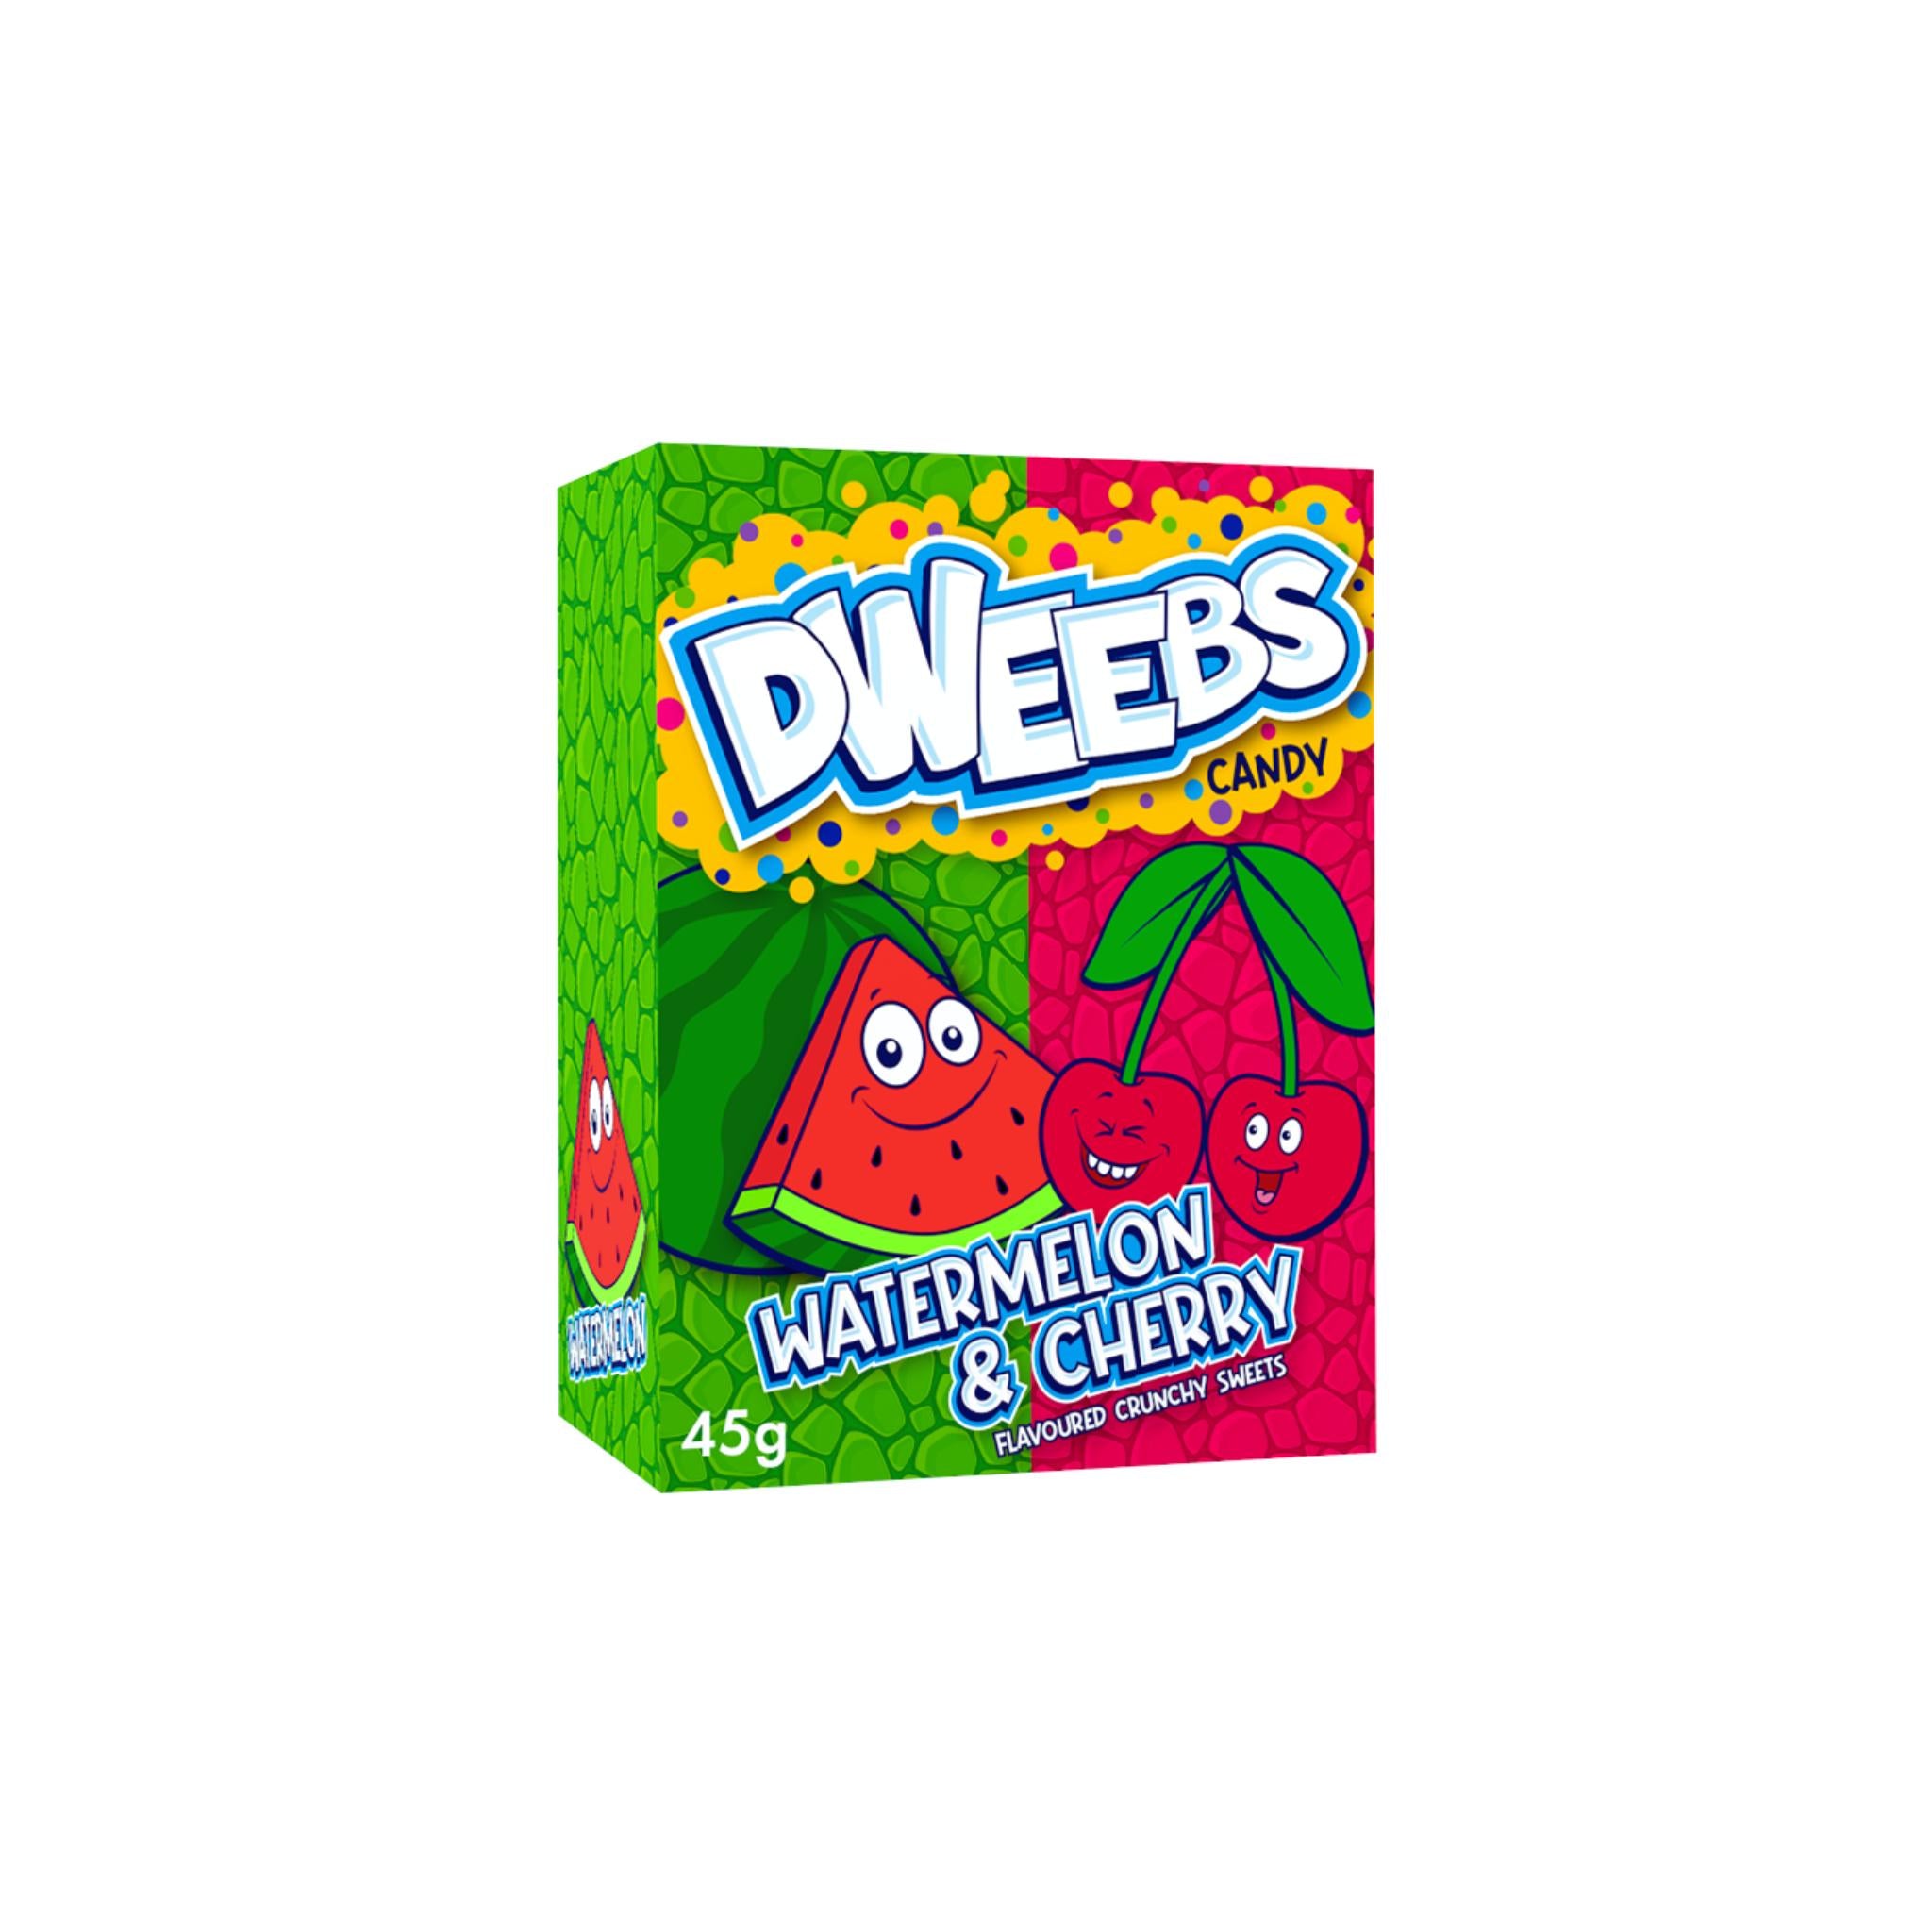 Dweebs Watermelon & Cherry - 45g